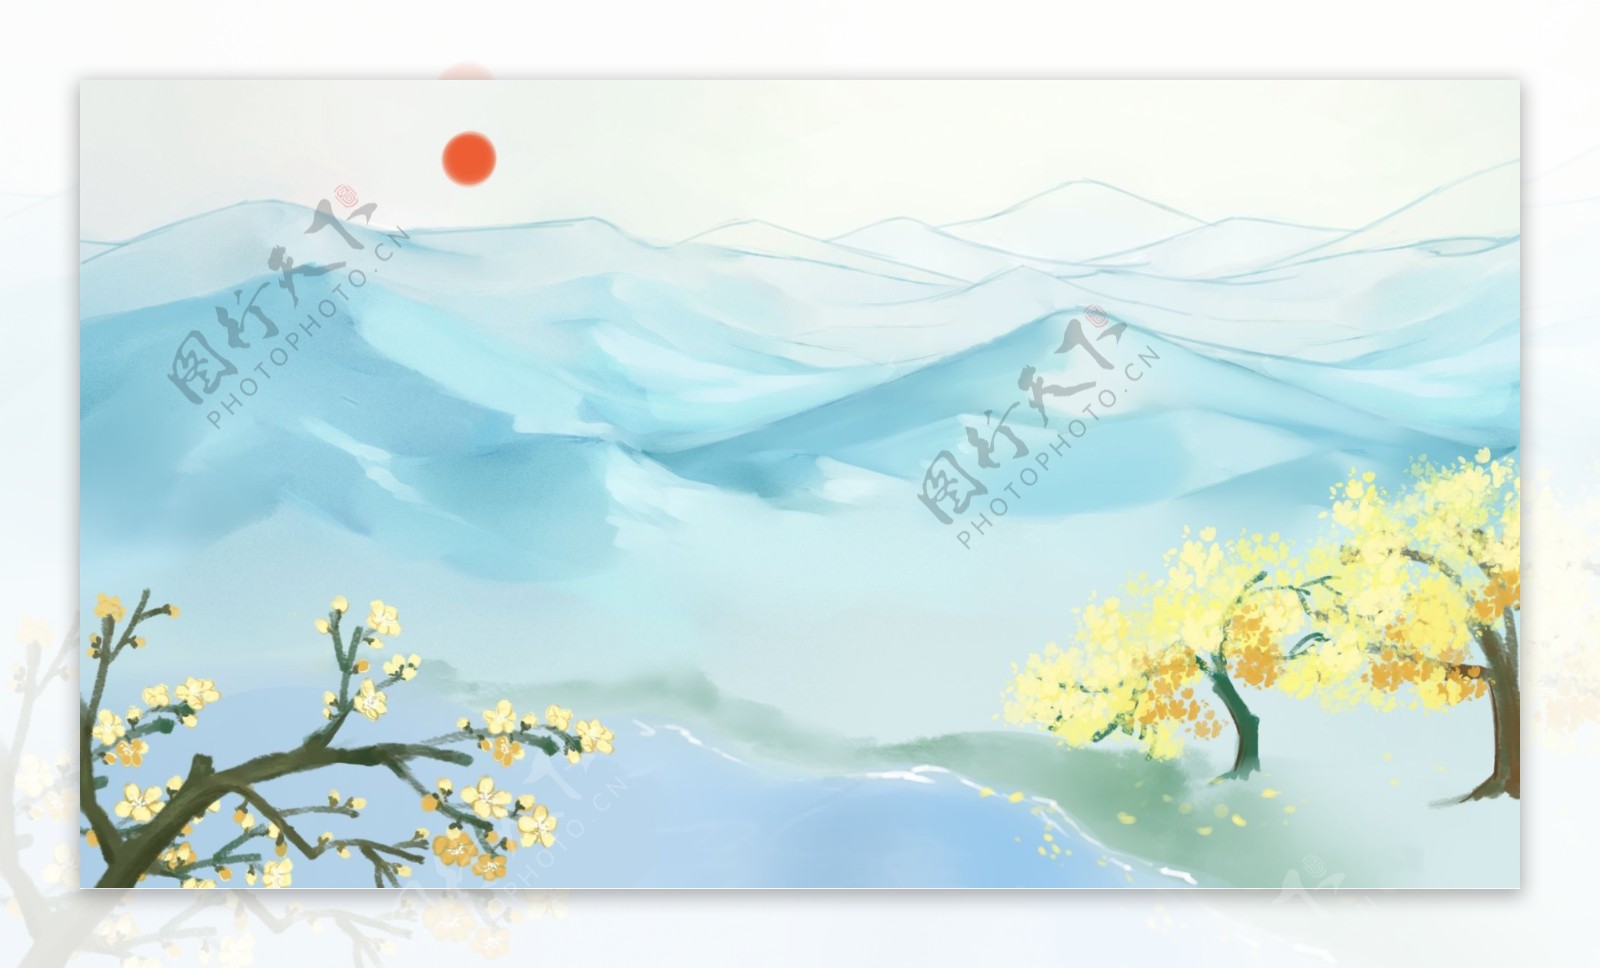 彩绘远山太阳桂花树背景素材